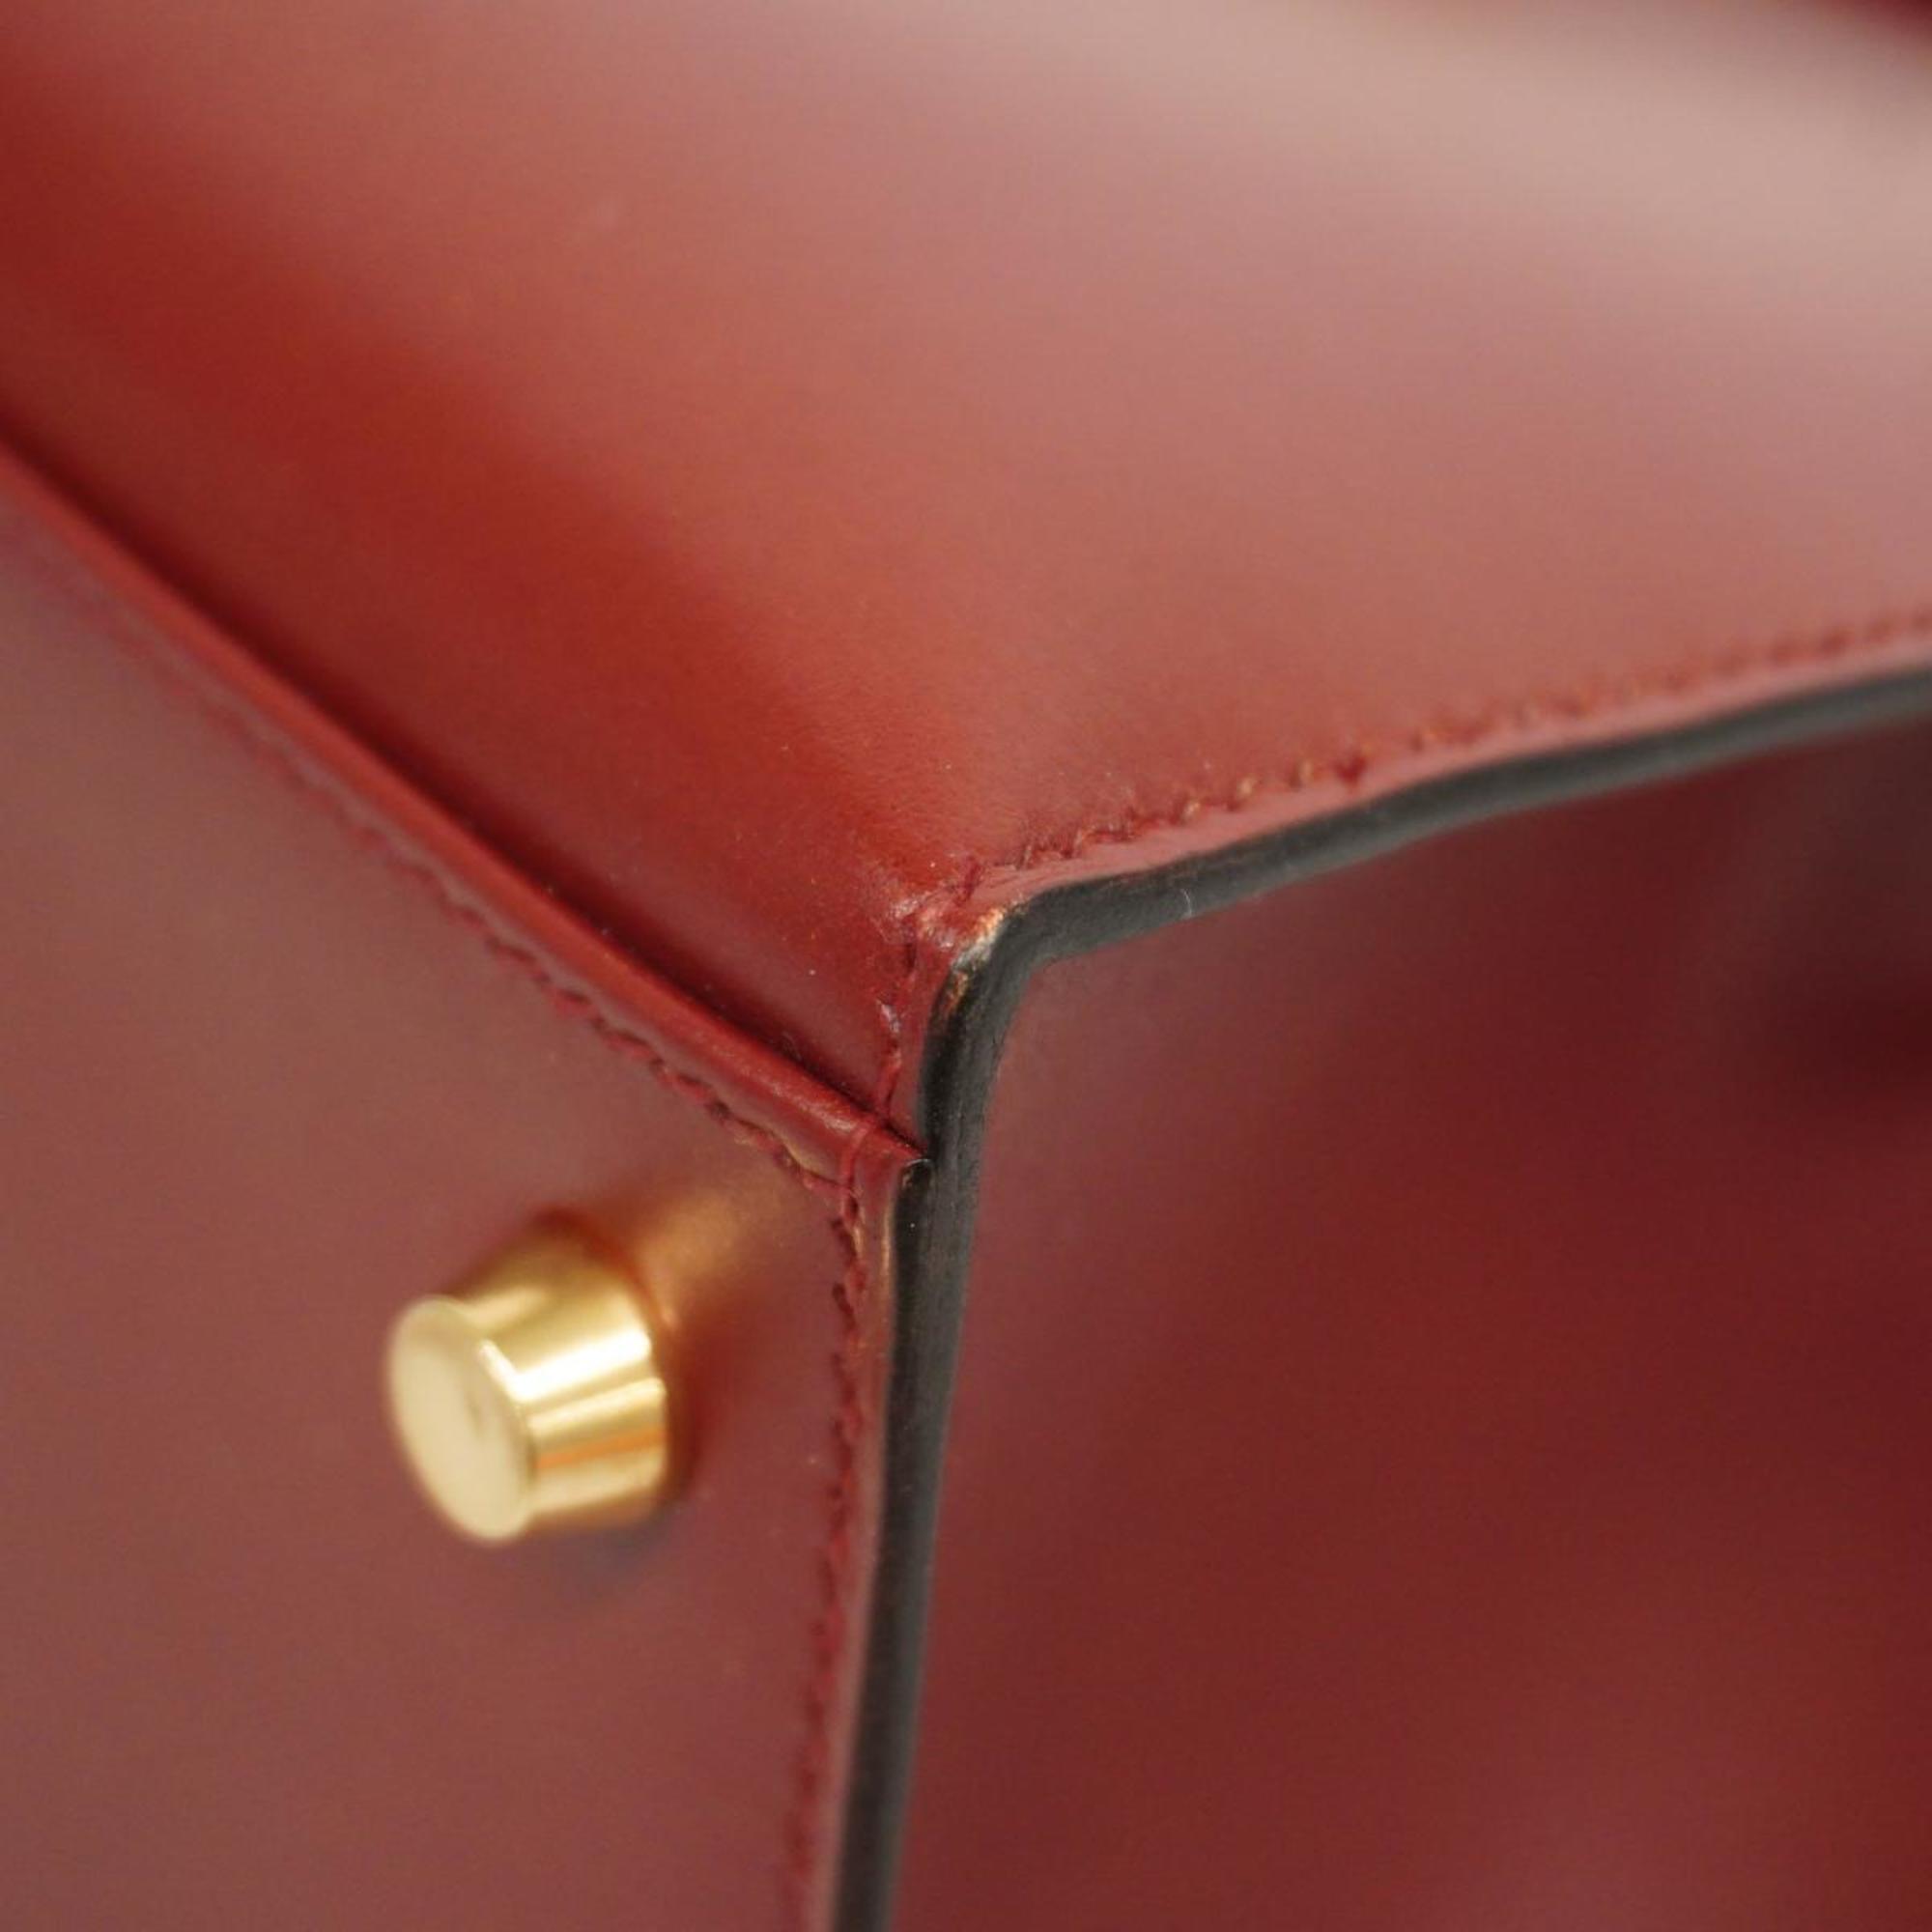 Hermes Handbag Kelly 32 □D Engraved Box Calf Rouge Ash Ladies